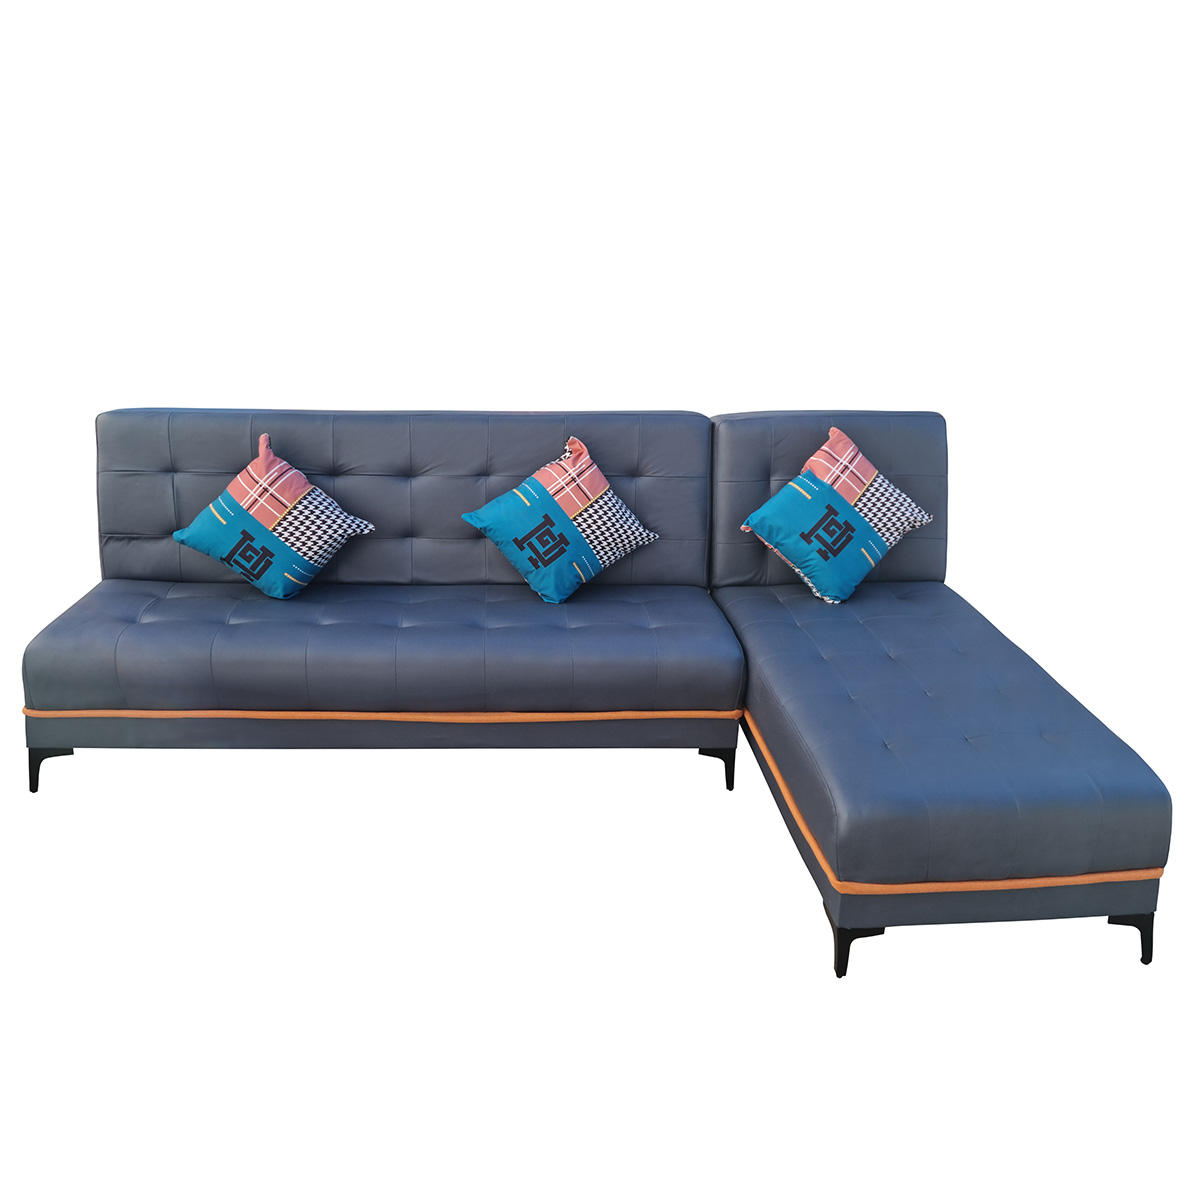 Καναπές γωνιακός - κρεβάτι 250Χ145 εκ. με επένδυση PU γκρι μπλε - KESKOR 656002